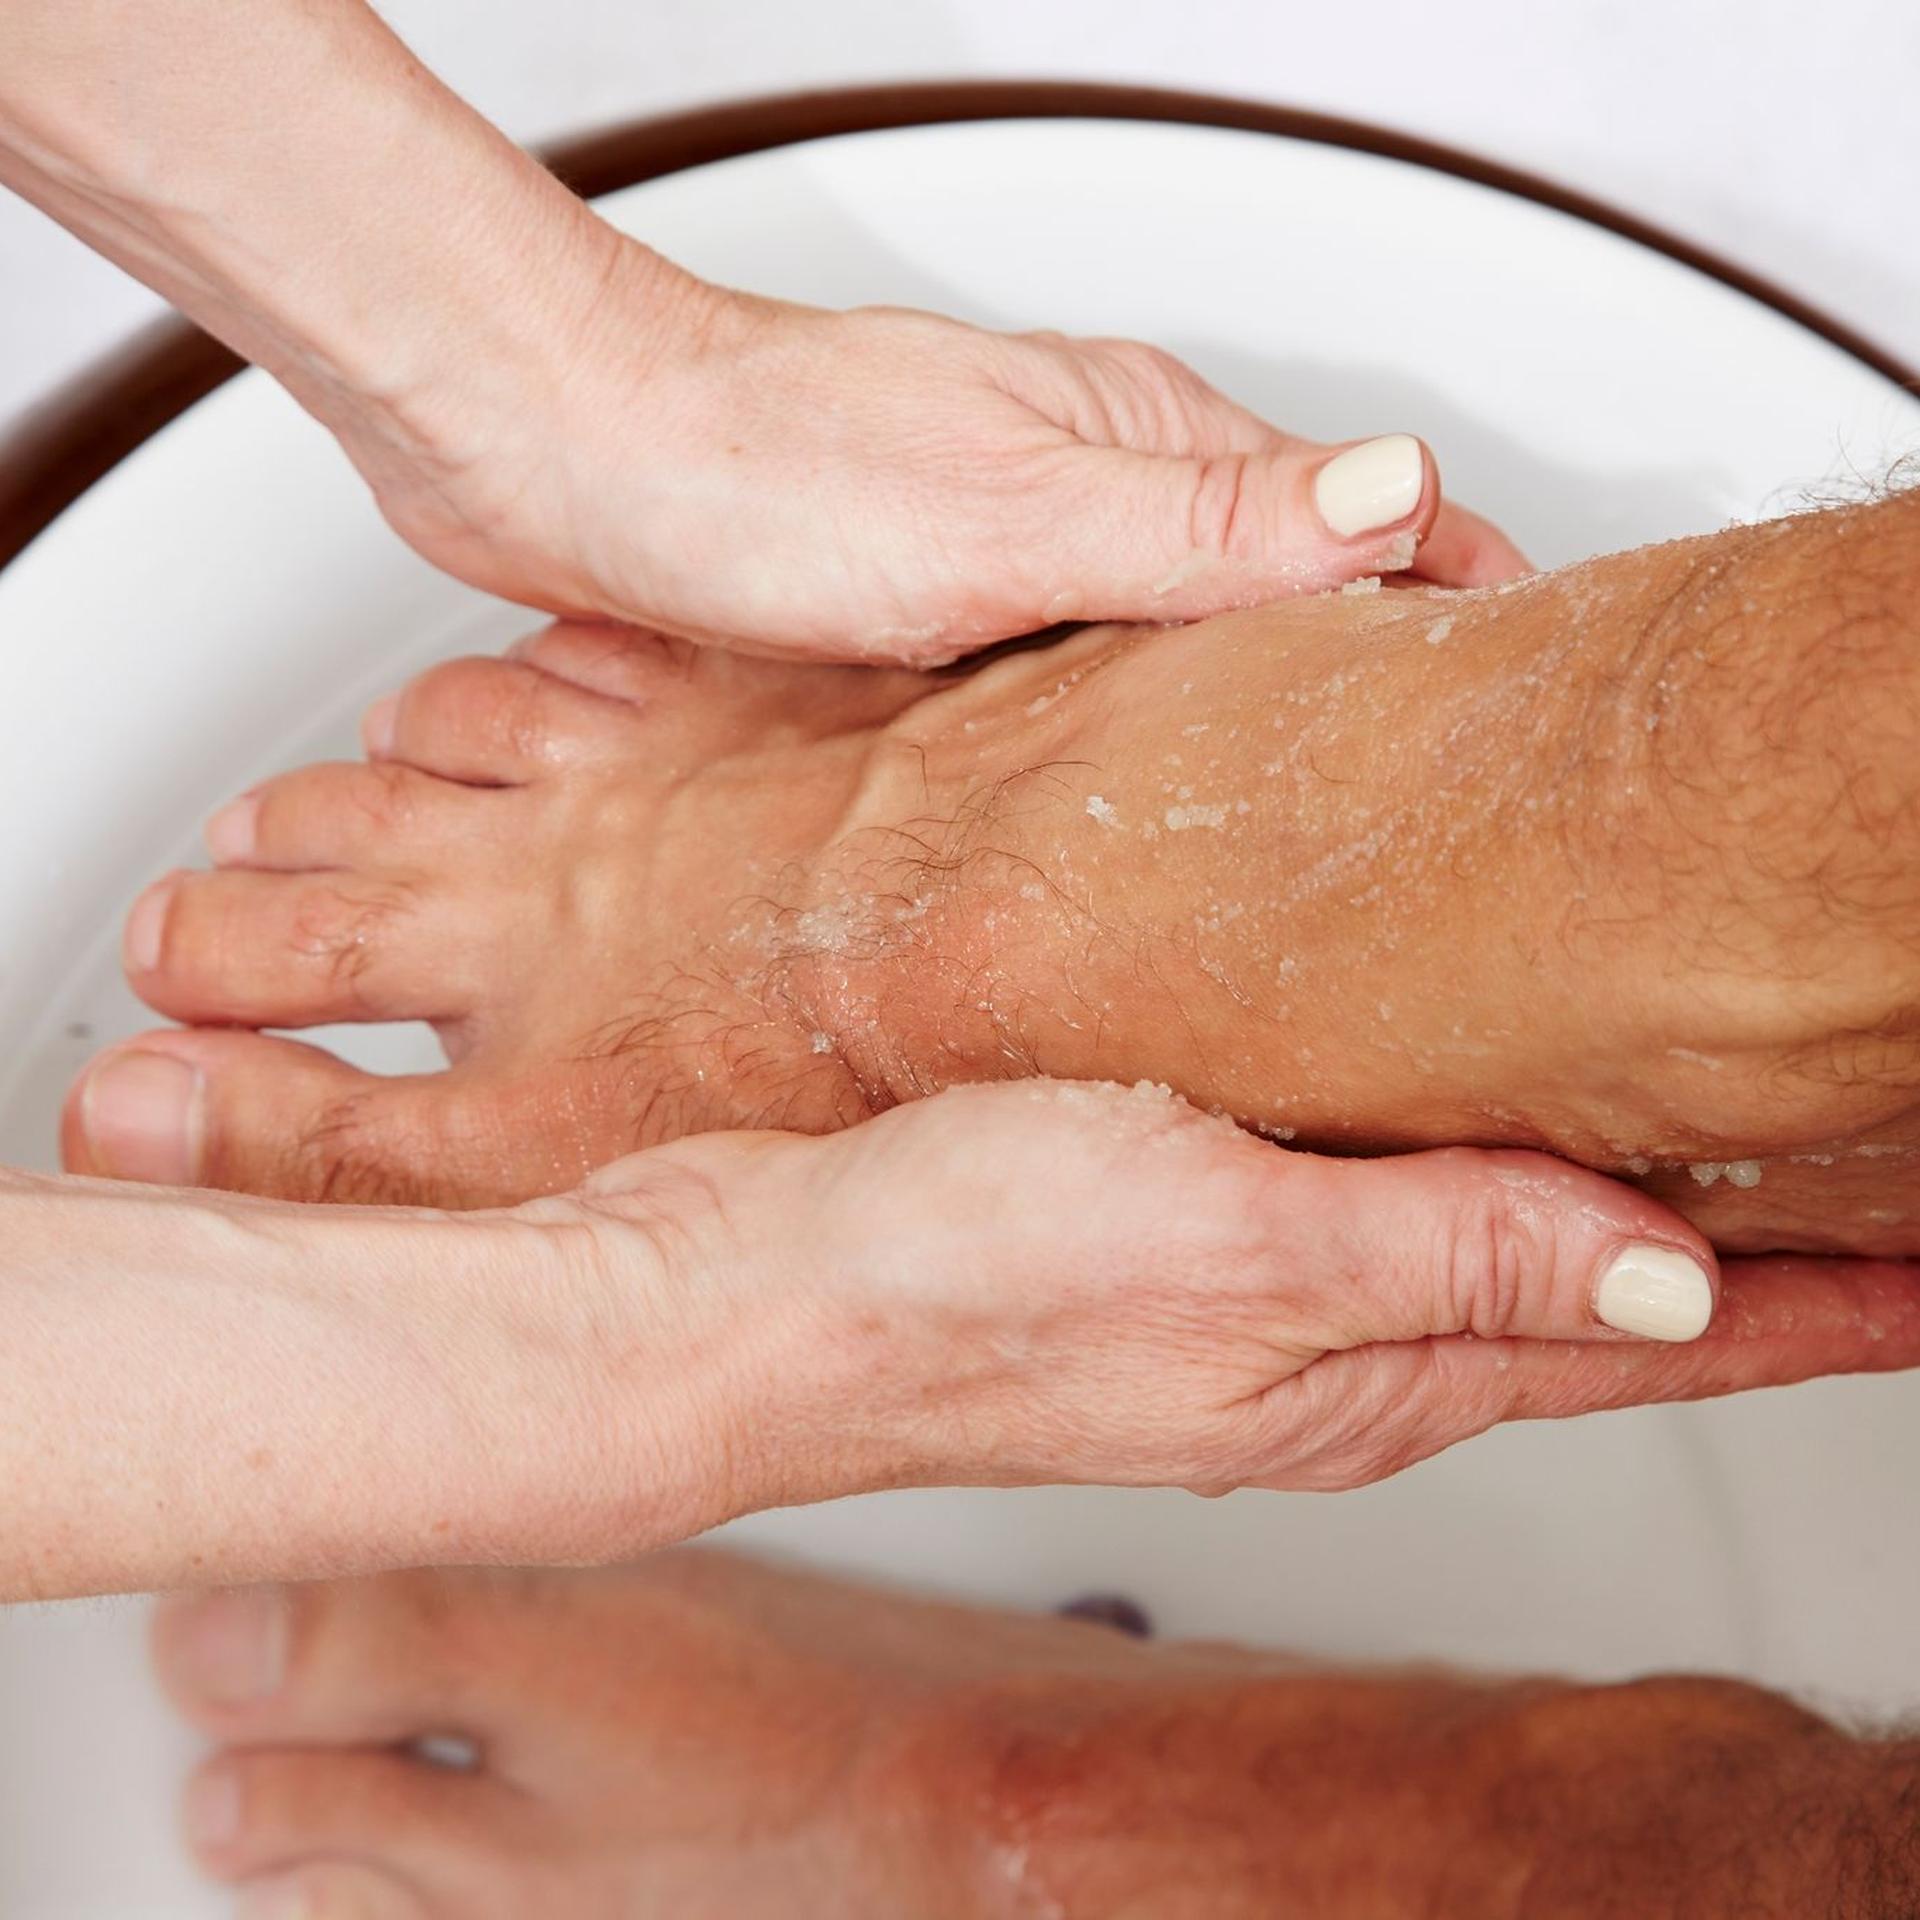 Verständnis und Geduld: Wer einen pflegebedürftigen Menschen wäscht, sollte beides mitbringen.